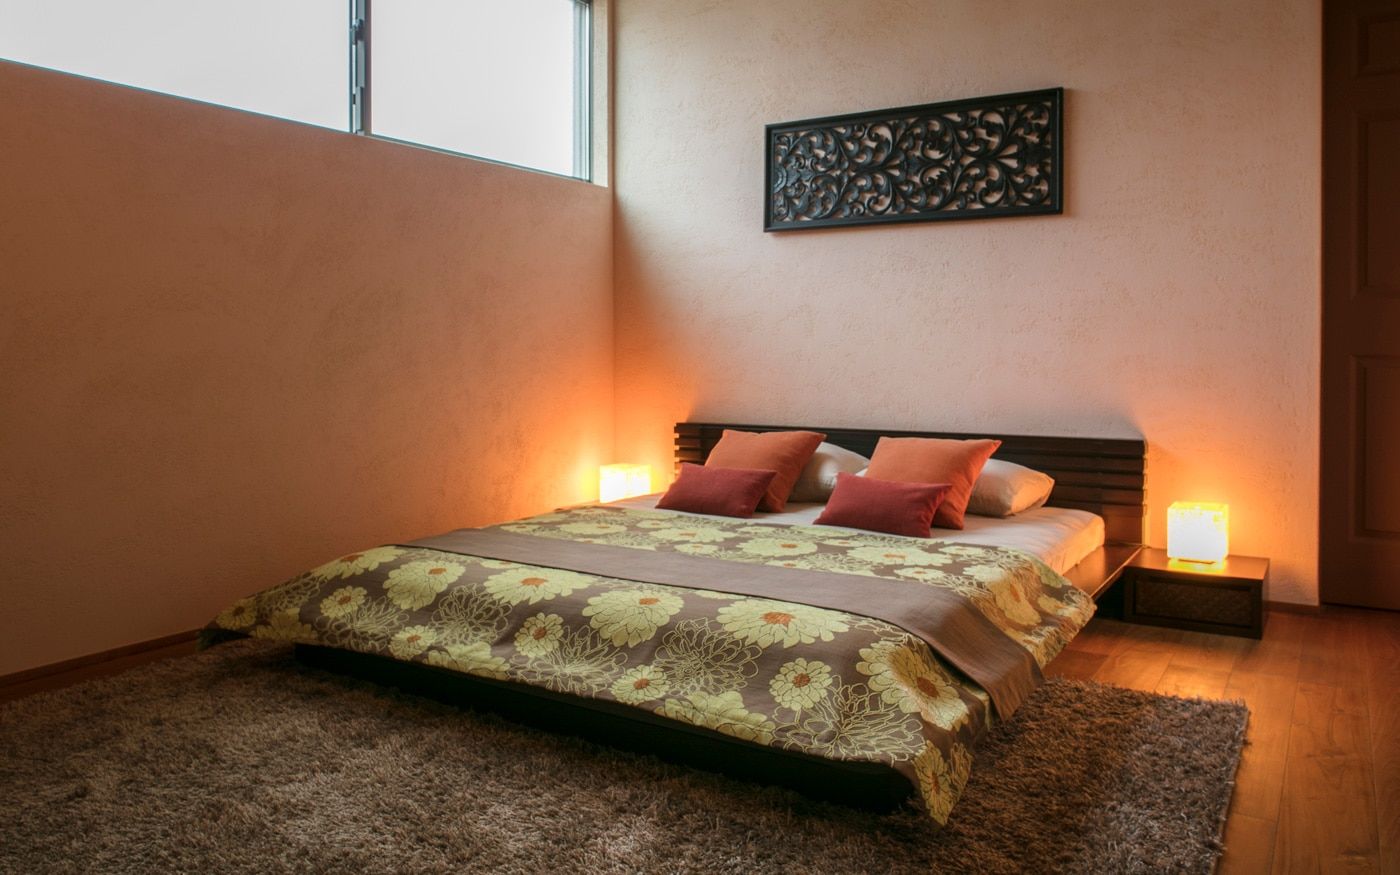 バリ風のアジアンリゾートなムードが漂う寝室10畳